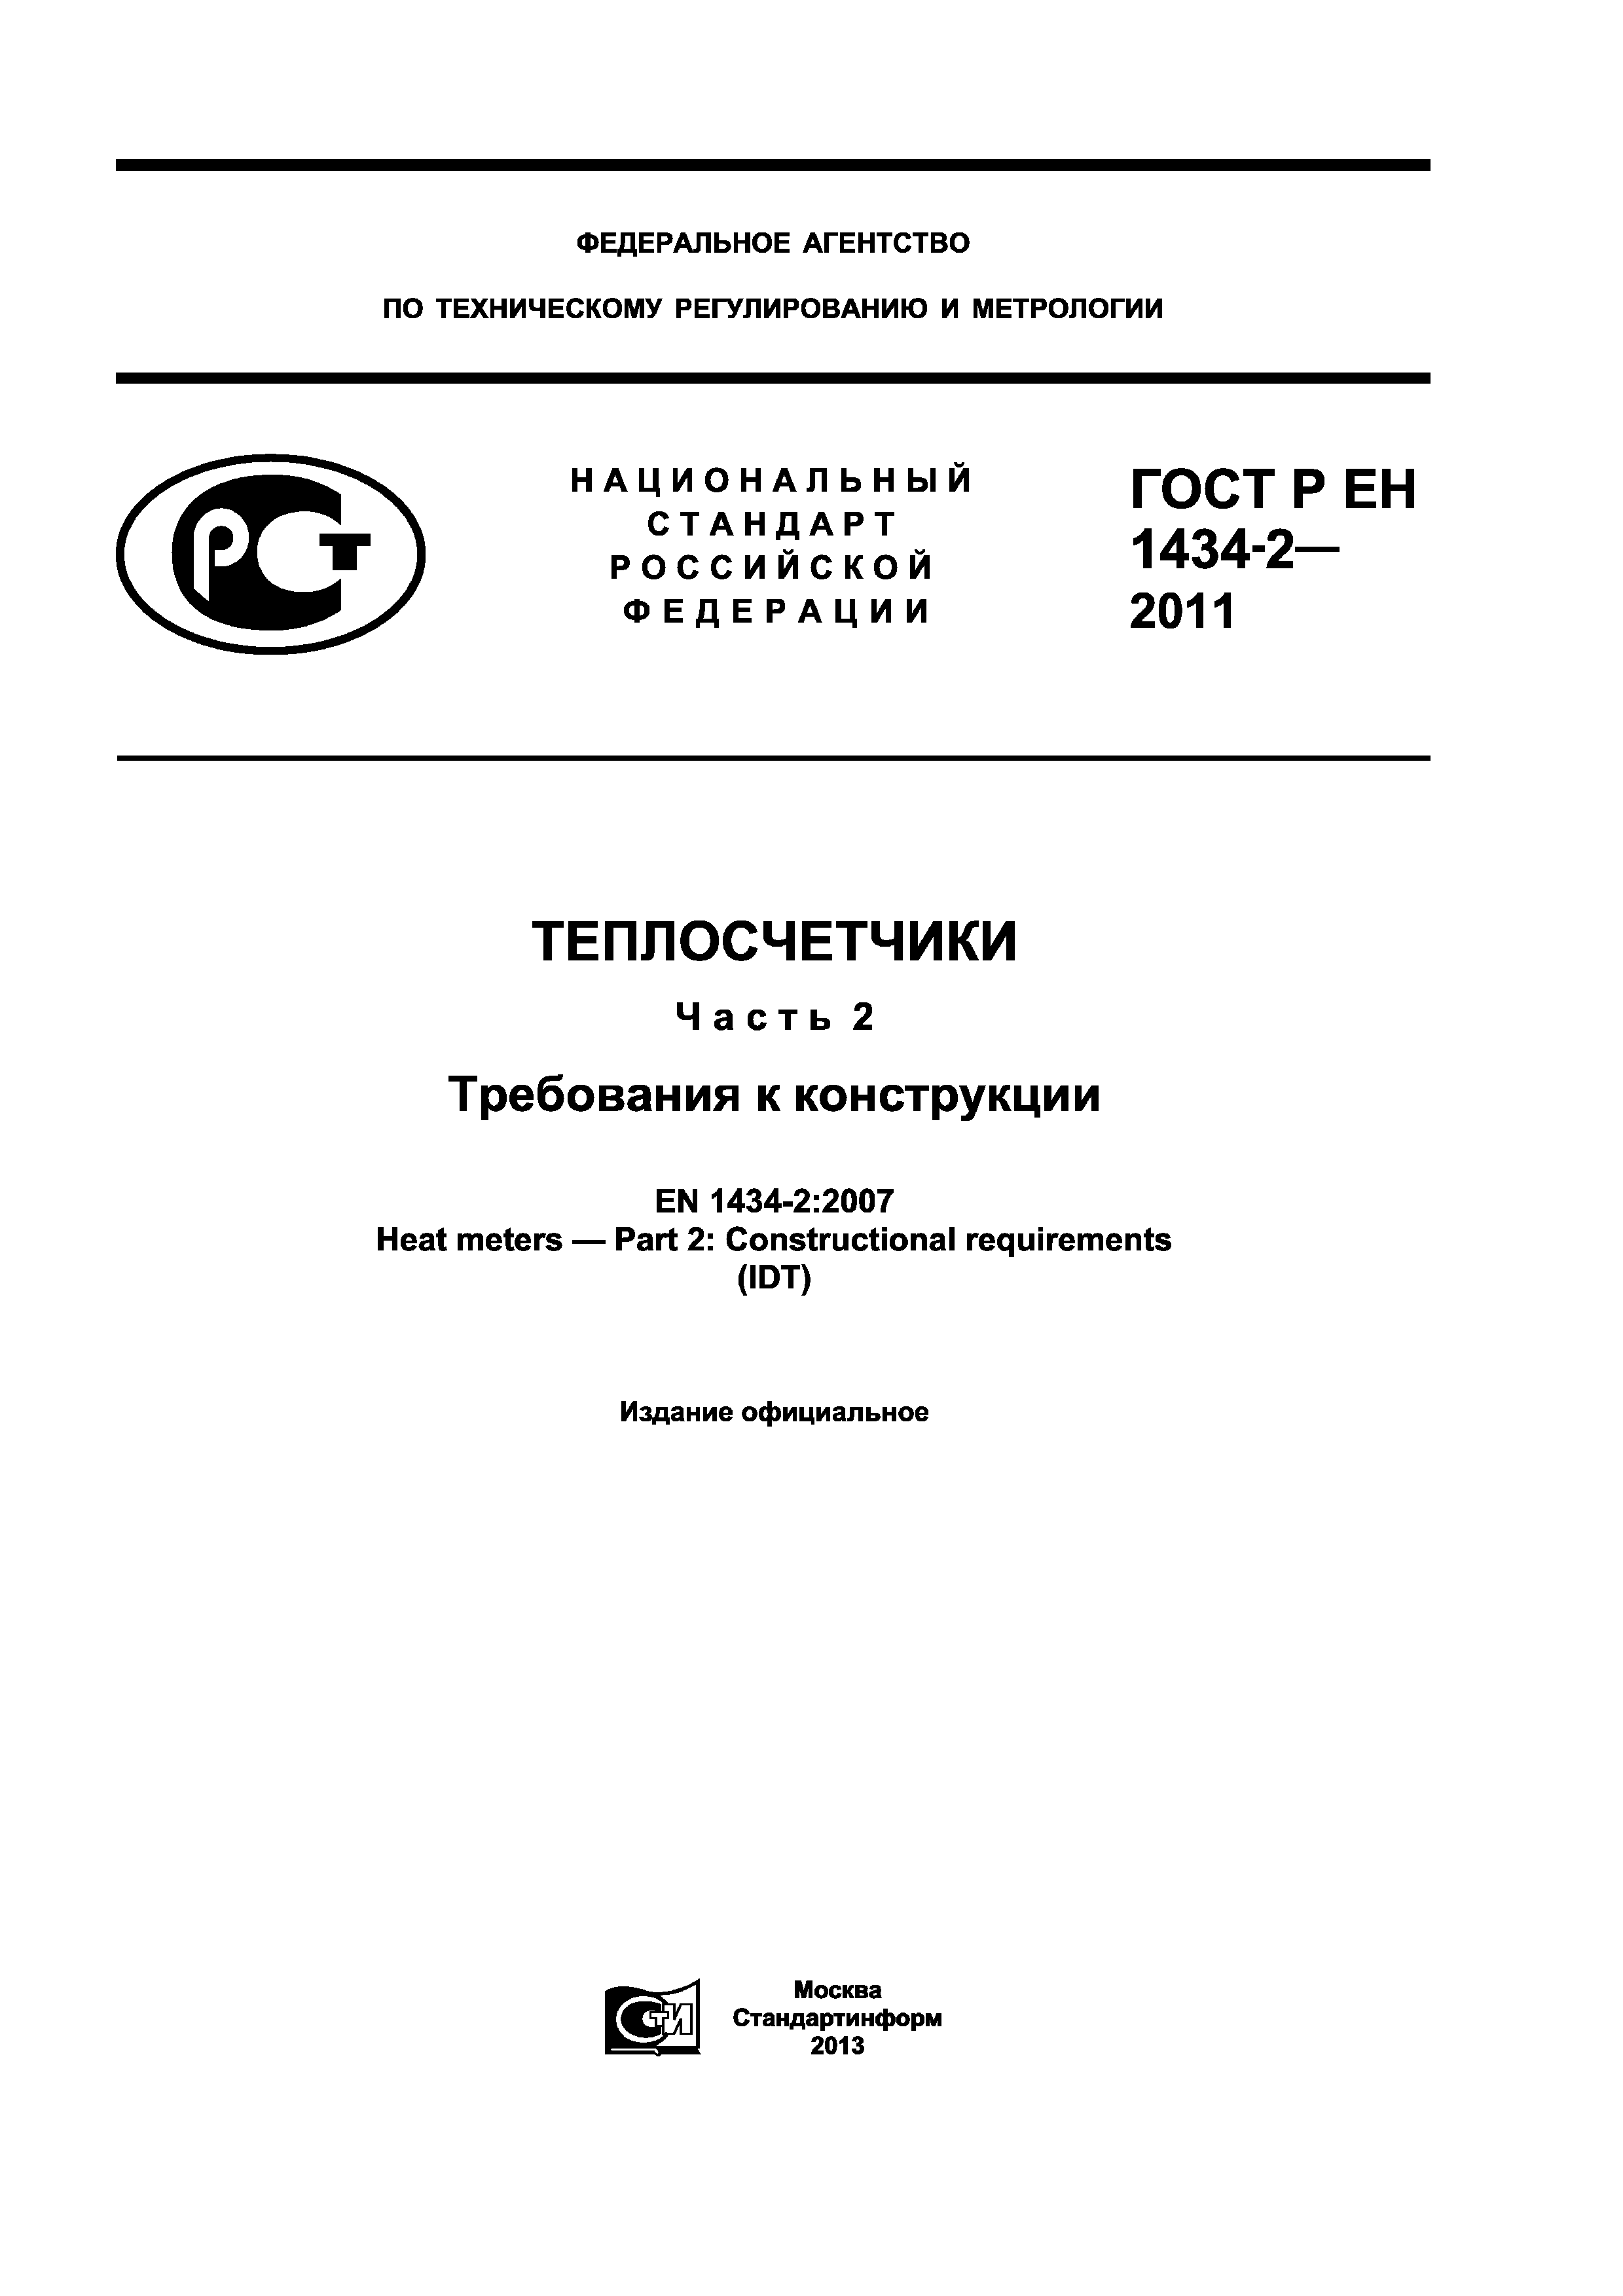 ГОСТ Р ЕН 1434-2-2011